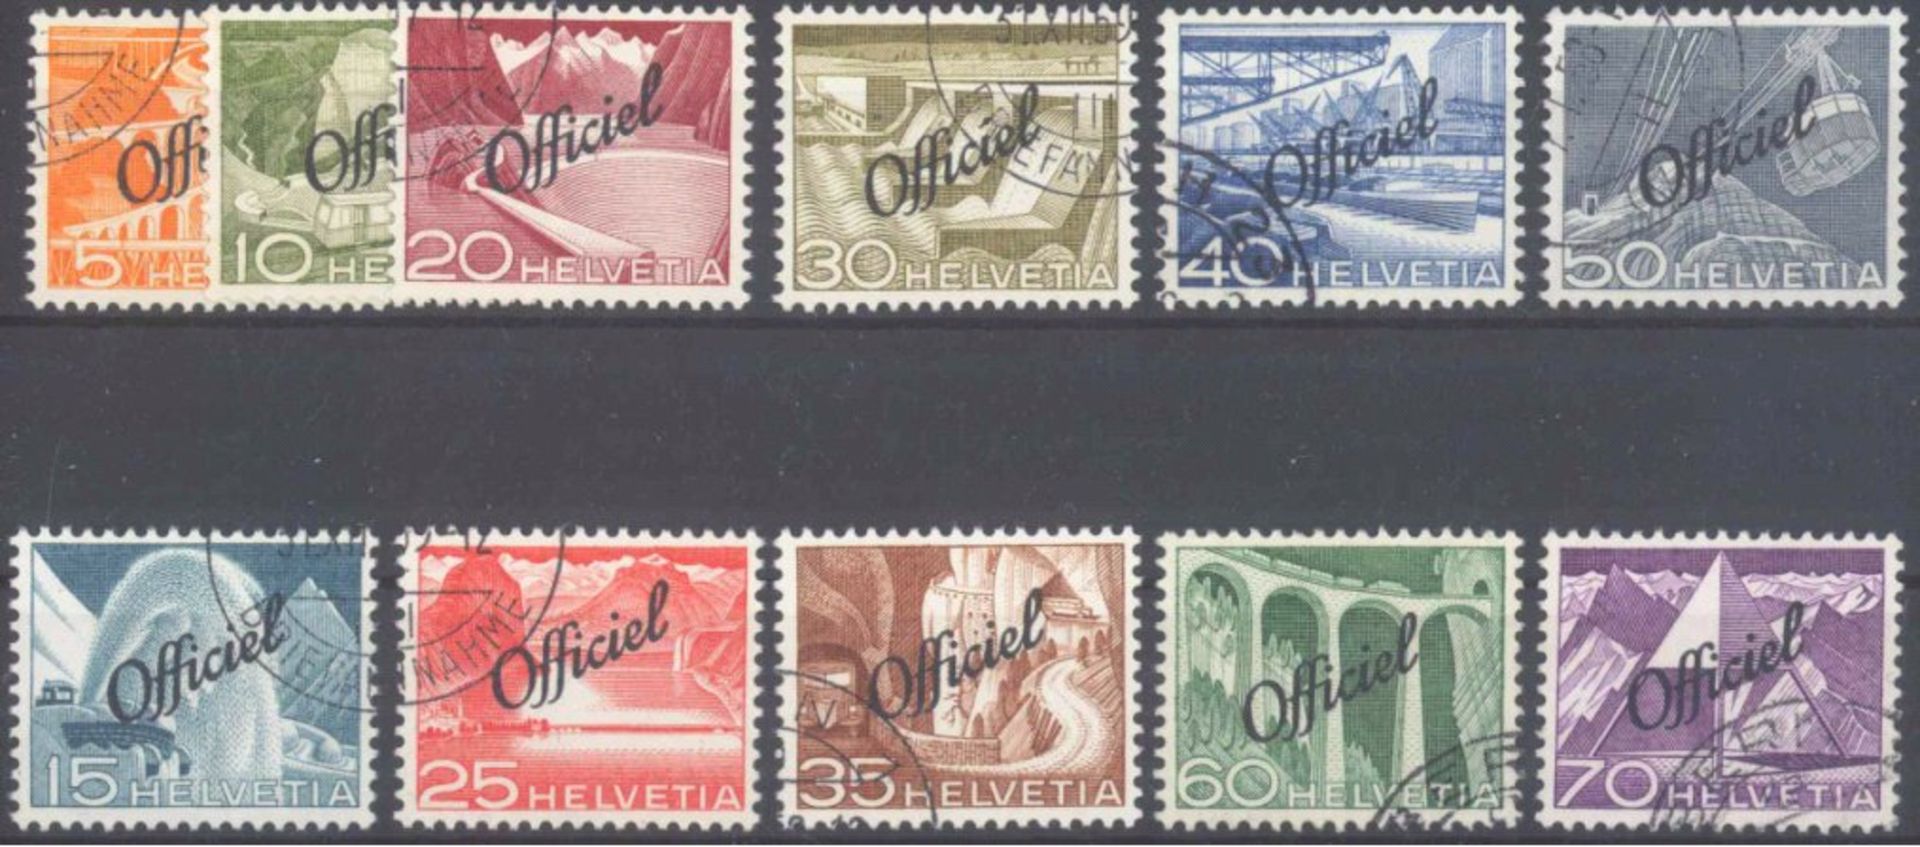 1950 Schweiz, Dienstmarken für die BundesbehördenMichelnummern 64-74, rundgestempelter Prachtsatz,